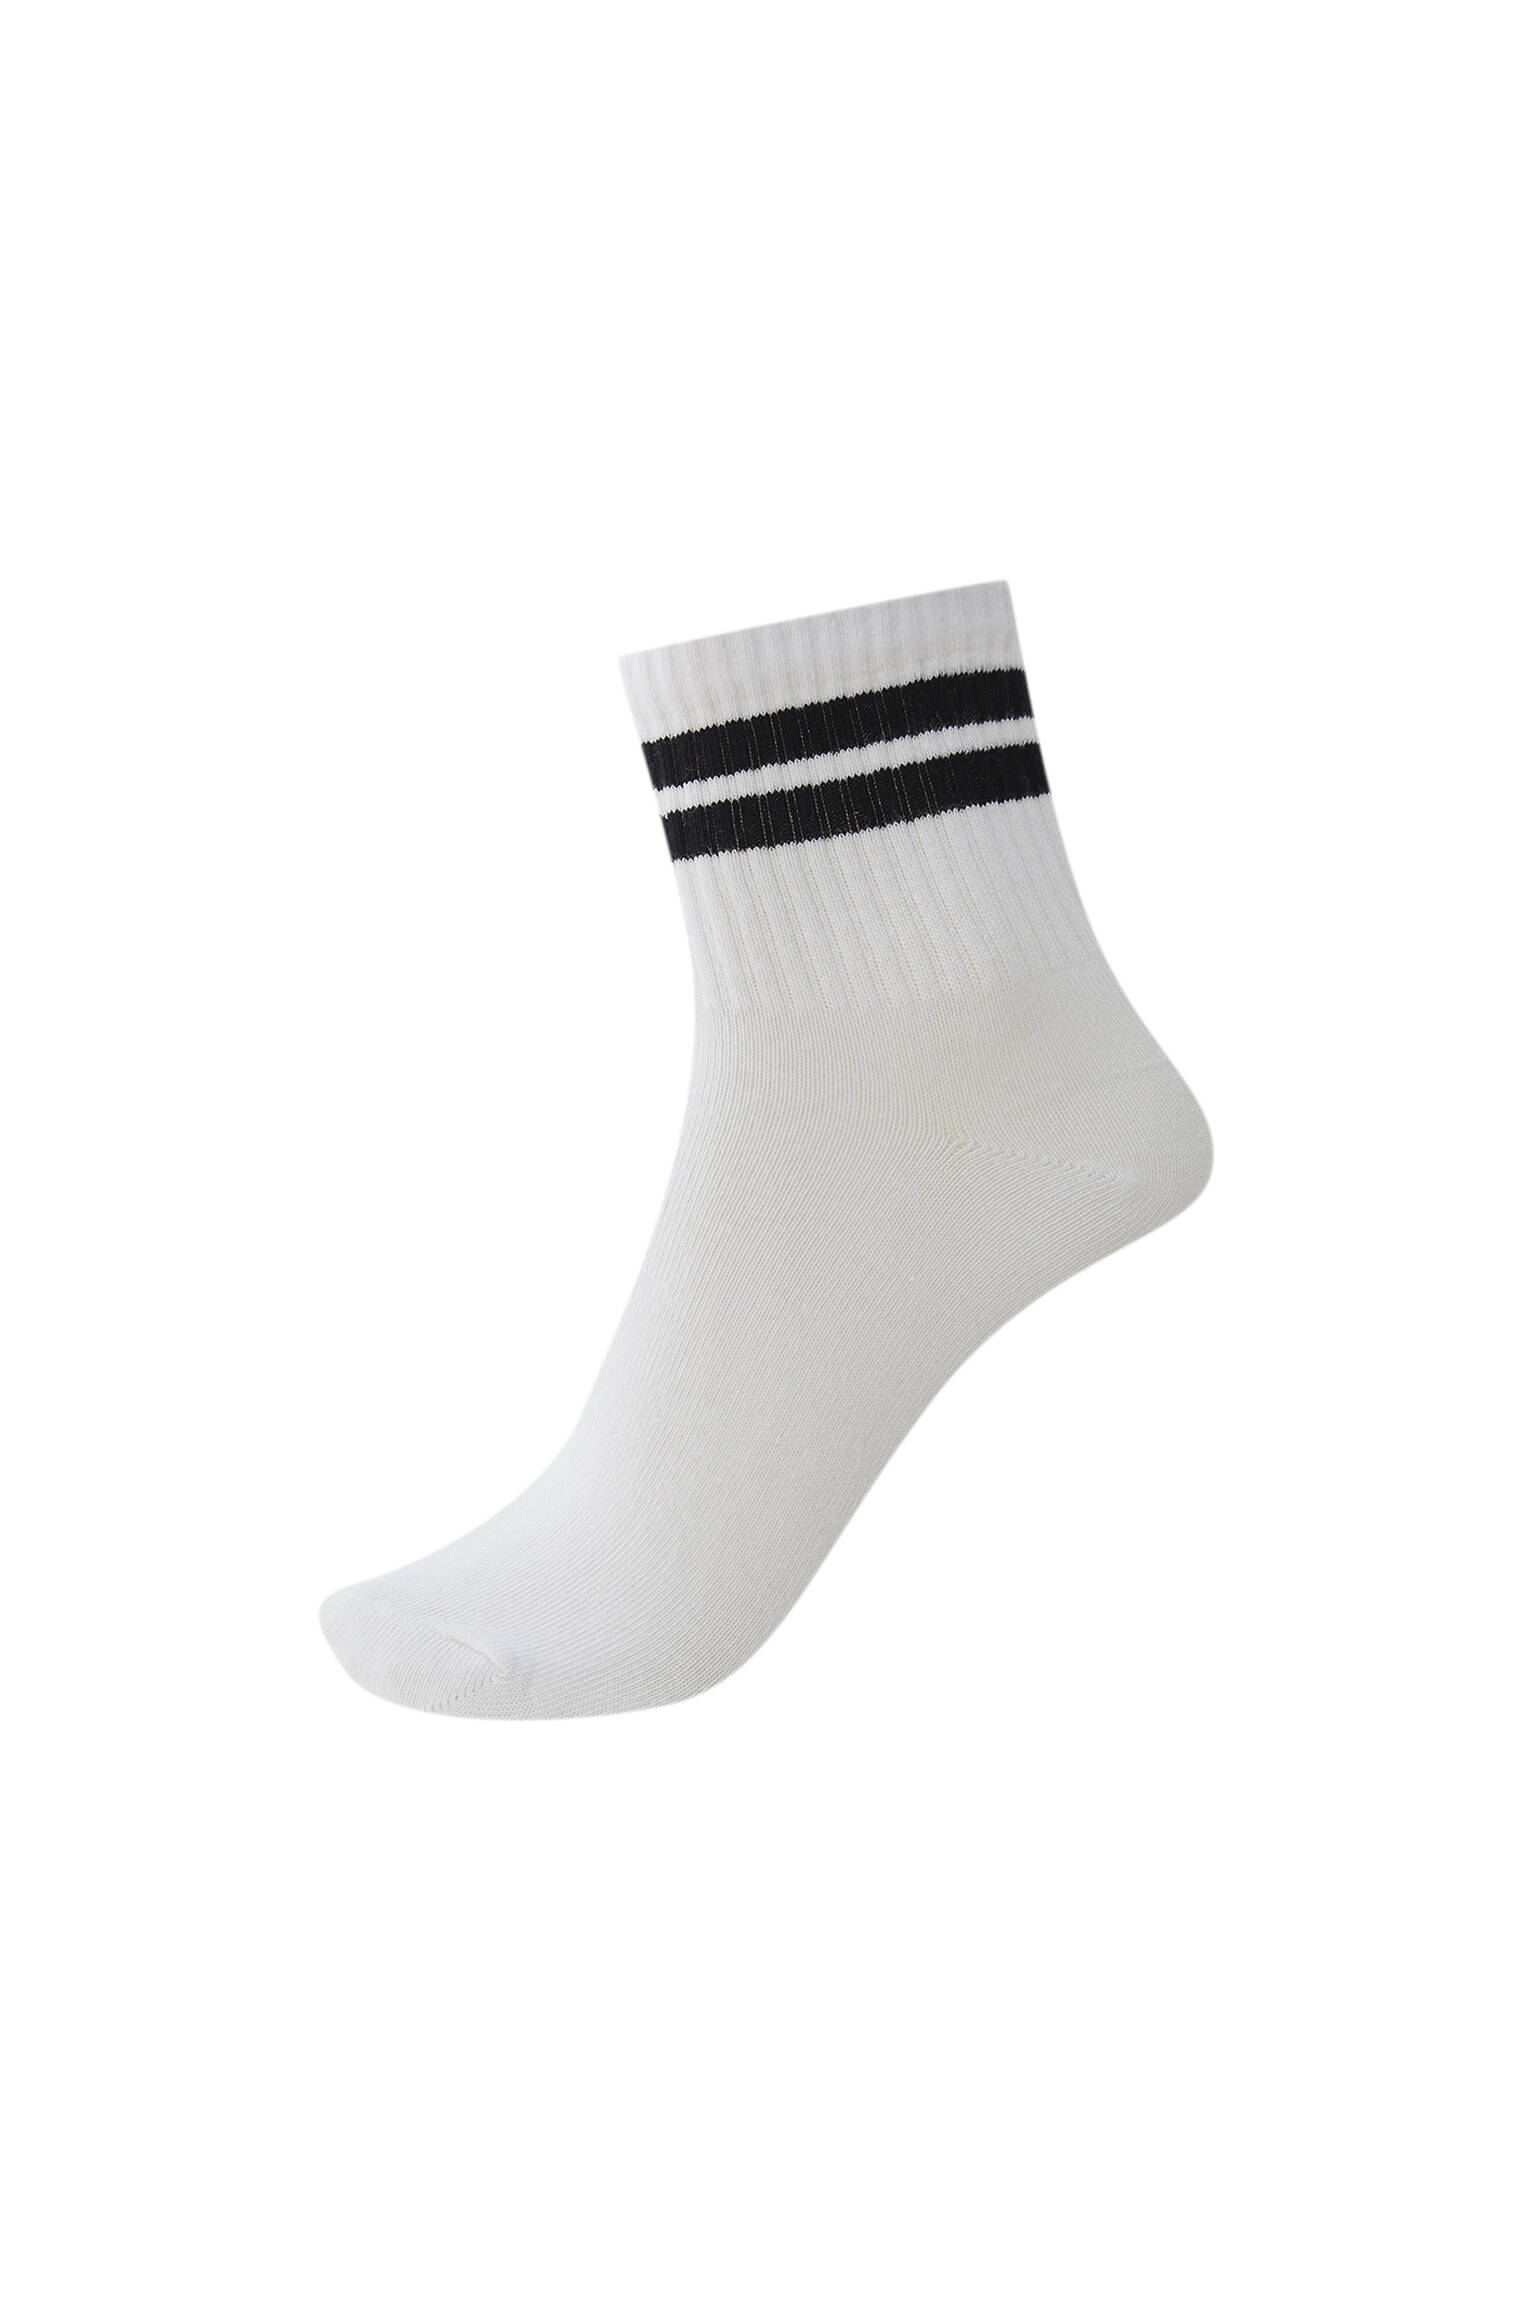 ЧЕРНЫЙ Спортивные носки с двумя полосами. Органический хлопок (не менее 75%). Pull & Bear